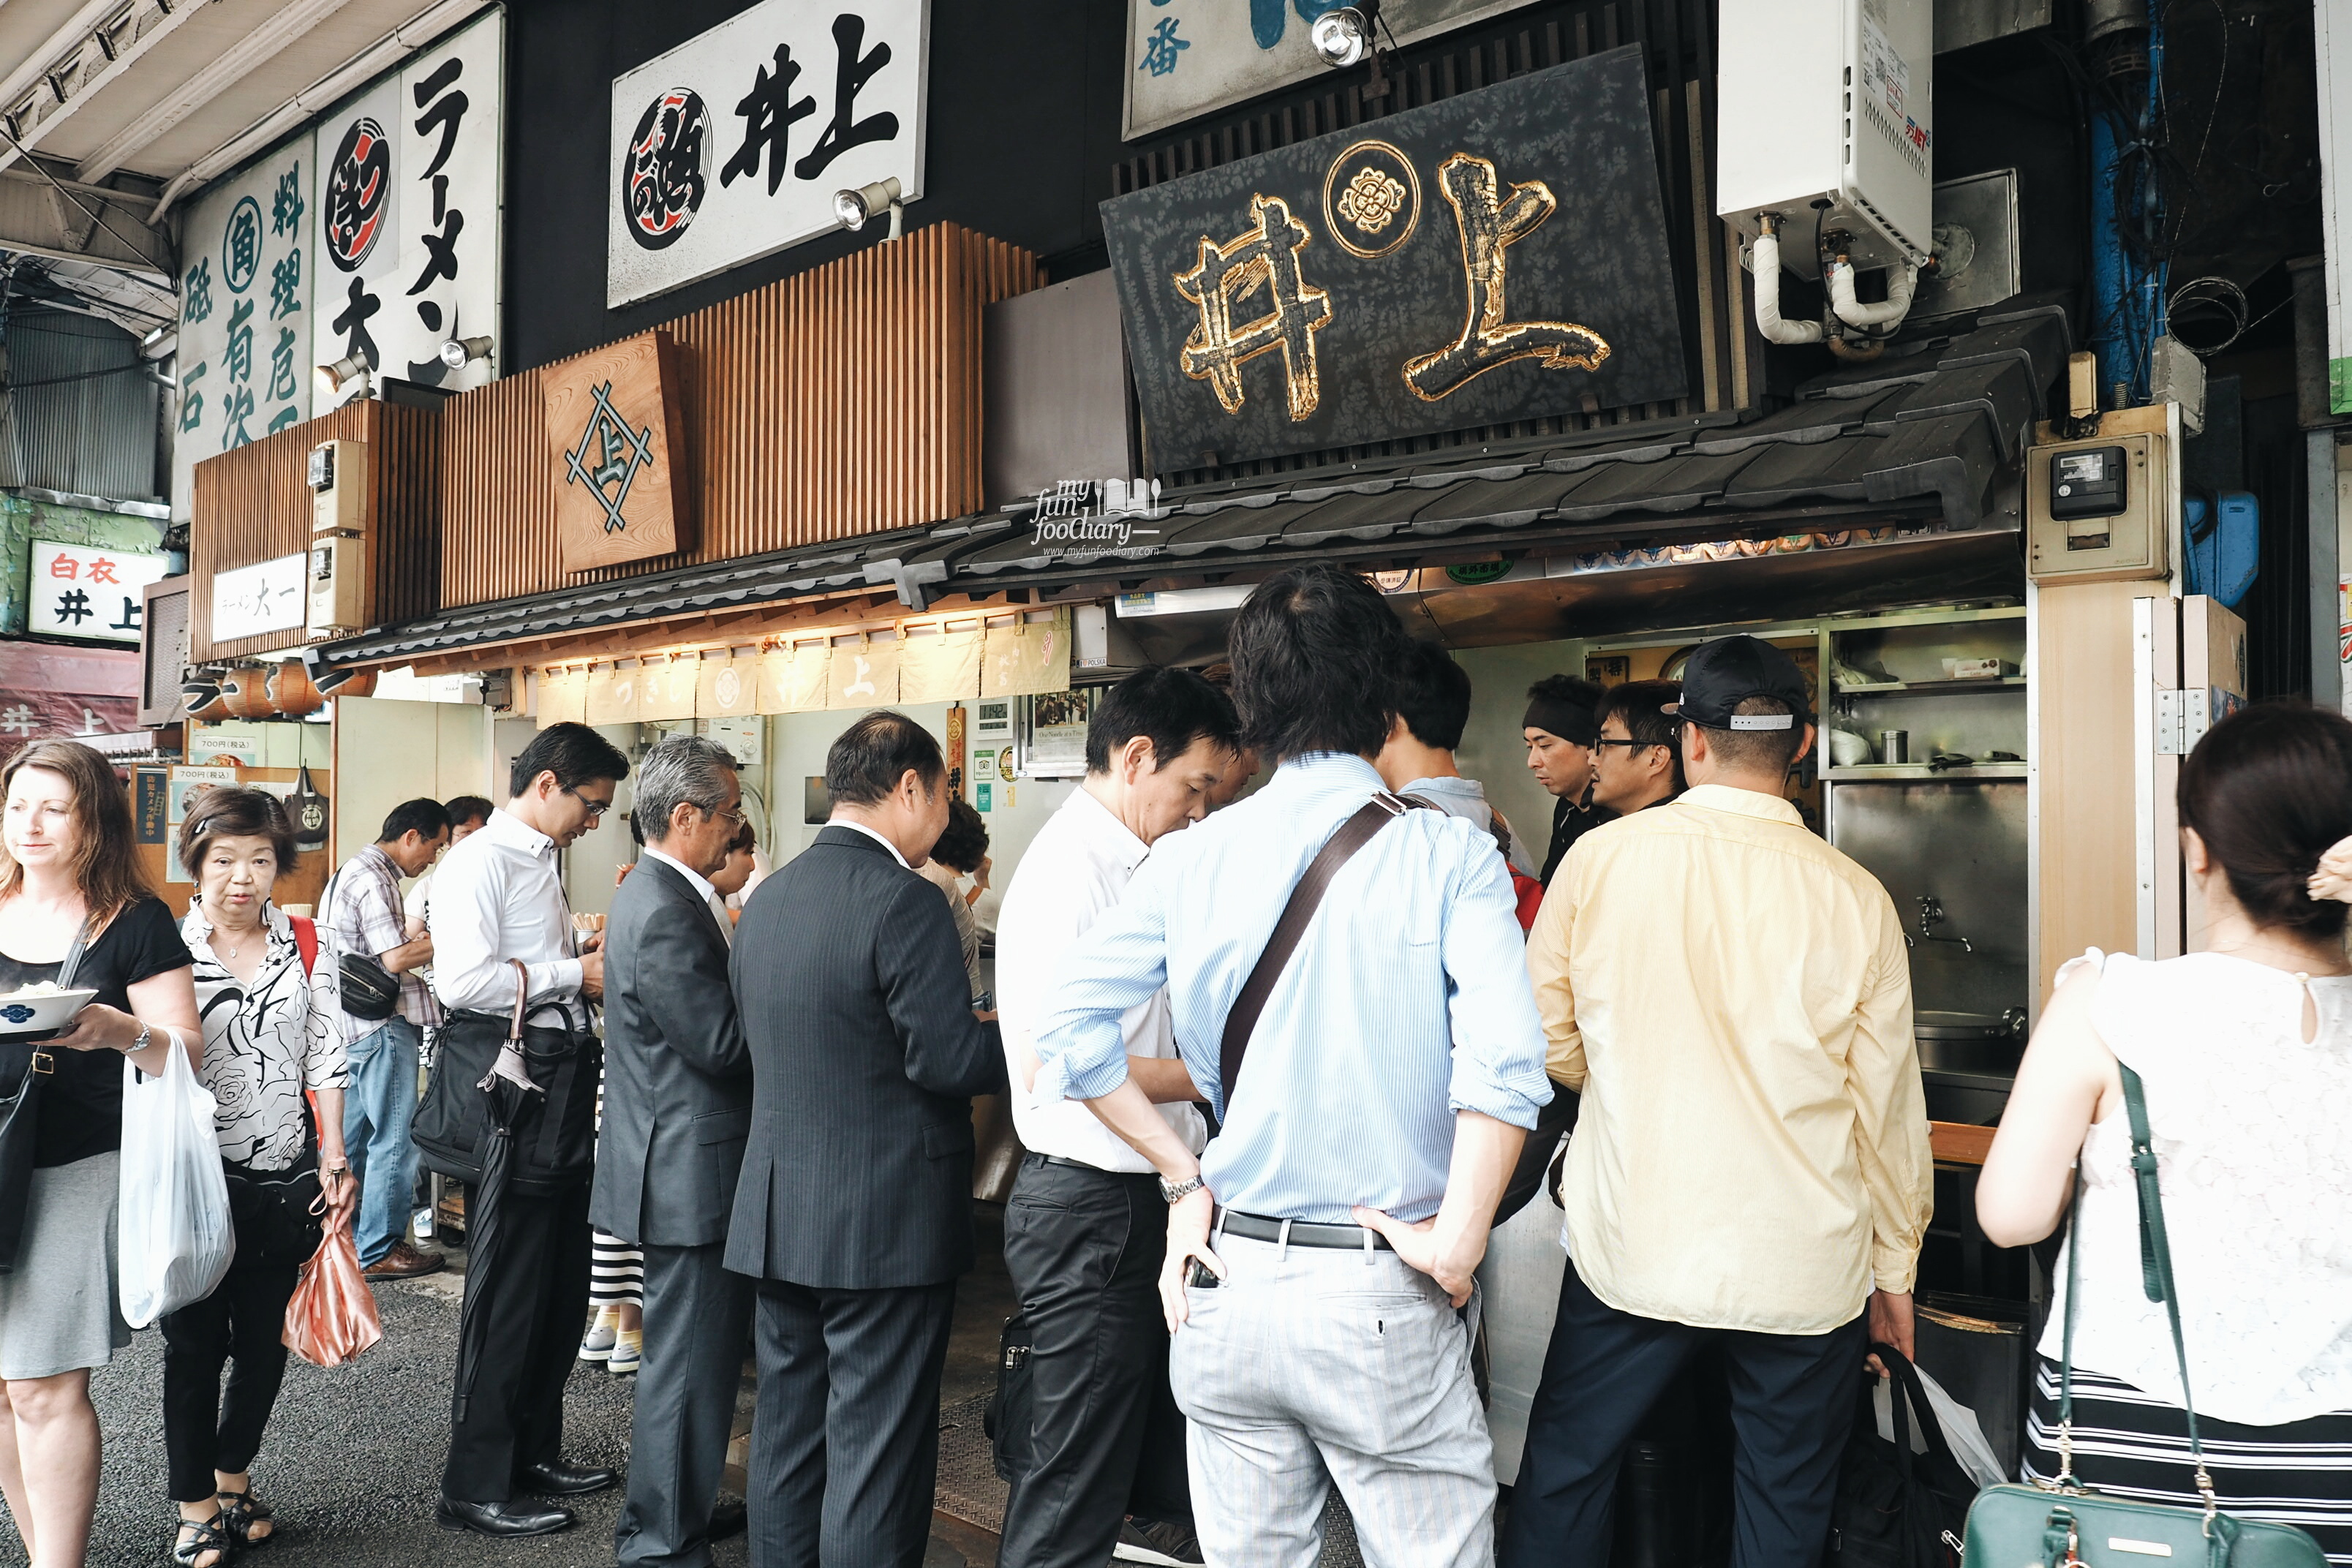 Long queue at the Ramen Shop at Tsukiji Market by Myfunfoodiary